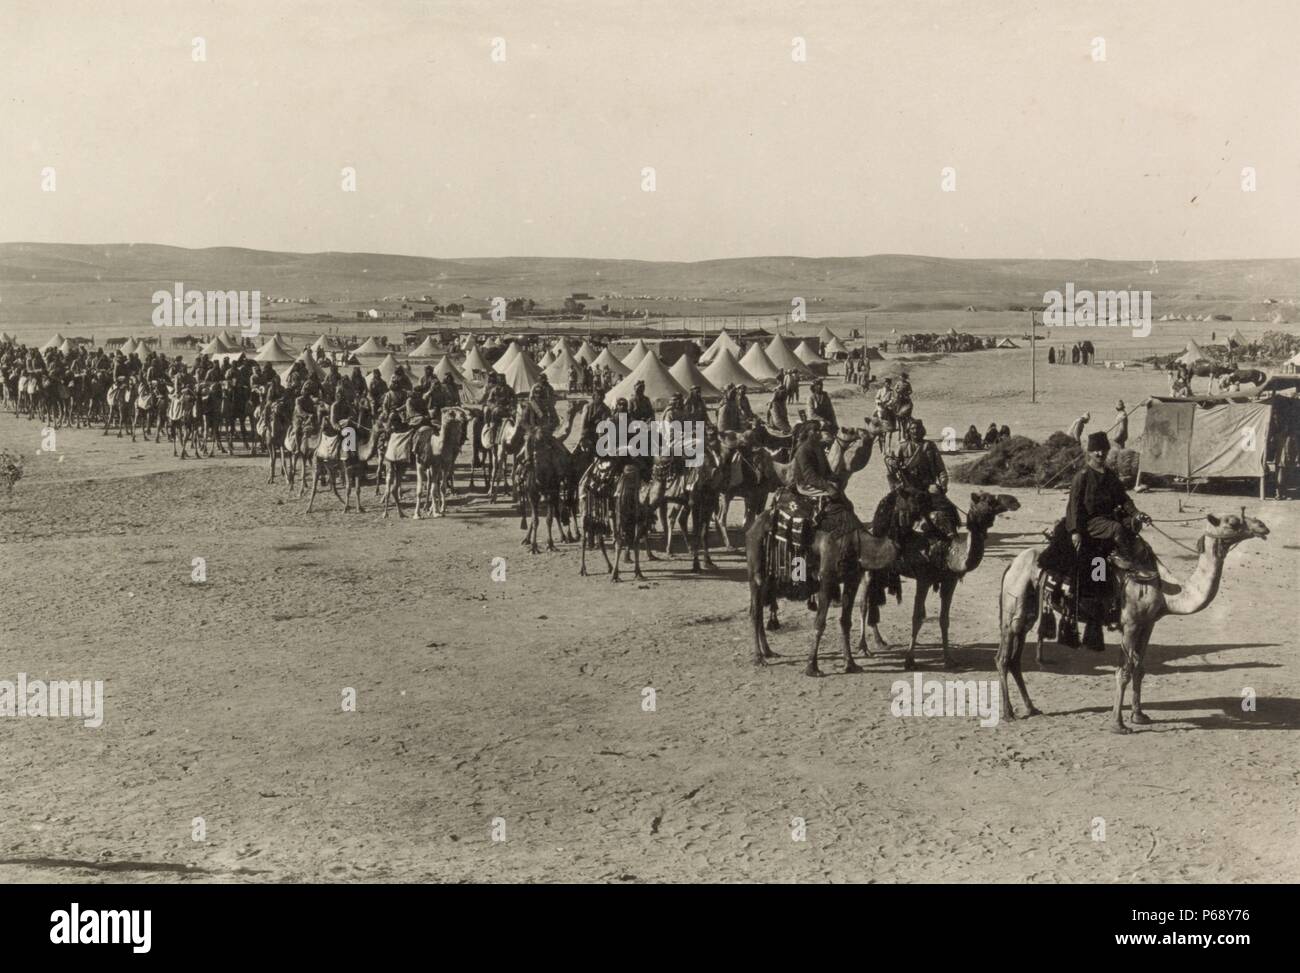 Photographie de l'armée turque Camel Corps à Beersheba pendant la Première Guerre mondiale. Datée 1915 Banque D'Images